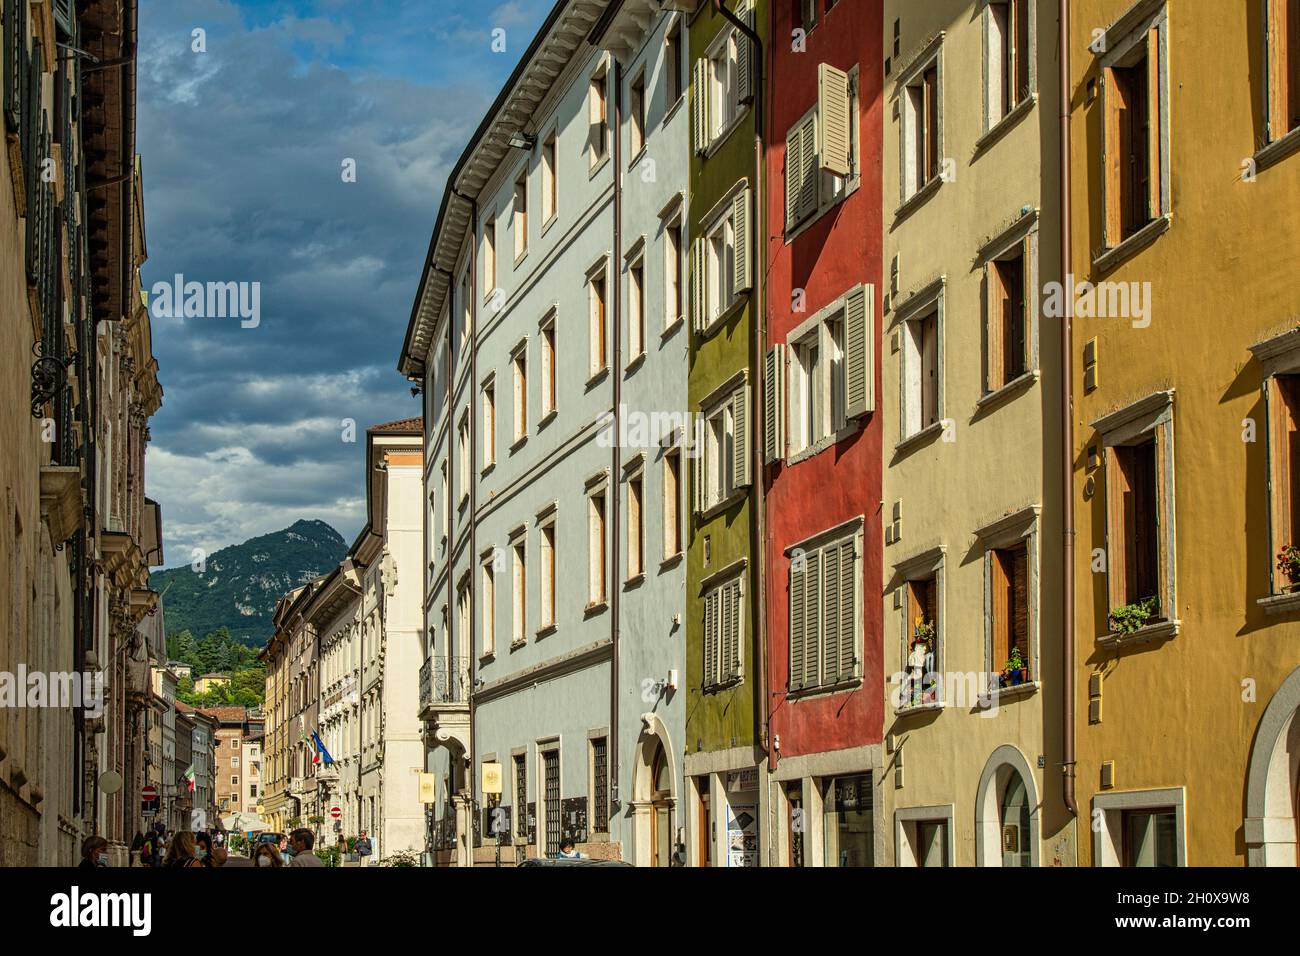 Fachadas de edificios antiguos en el centro histórico de la ciudad de Trento. Trento, provincia autónoma de Trento, Trentino-Alto Adige, Italia, Europa Foto de stock